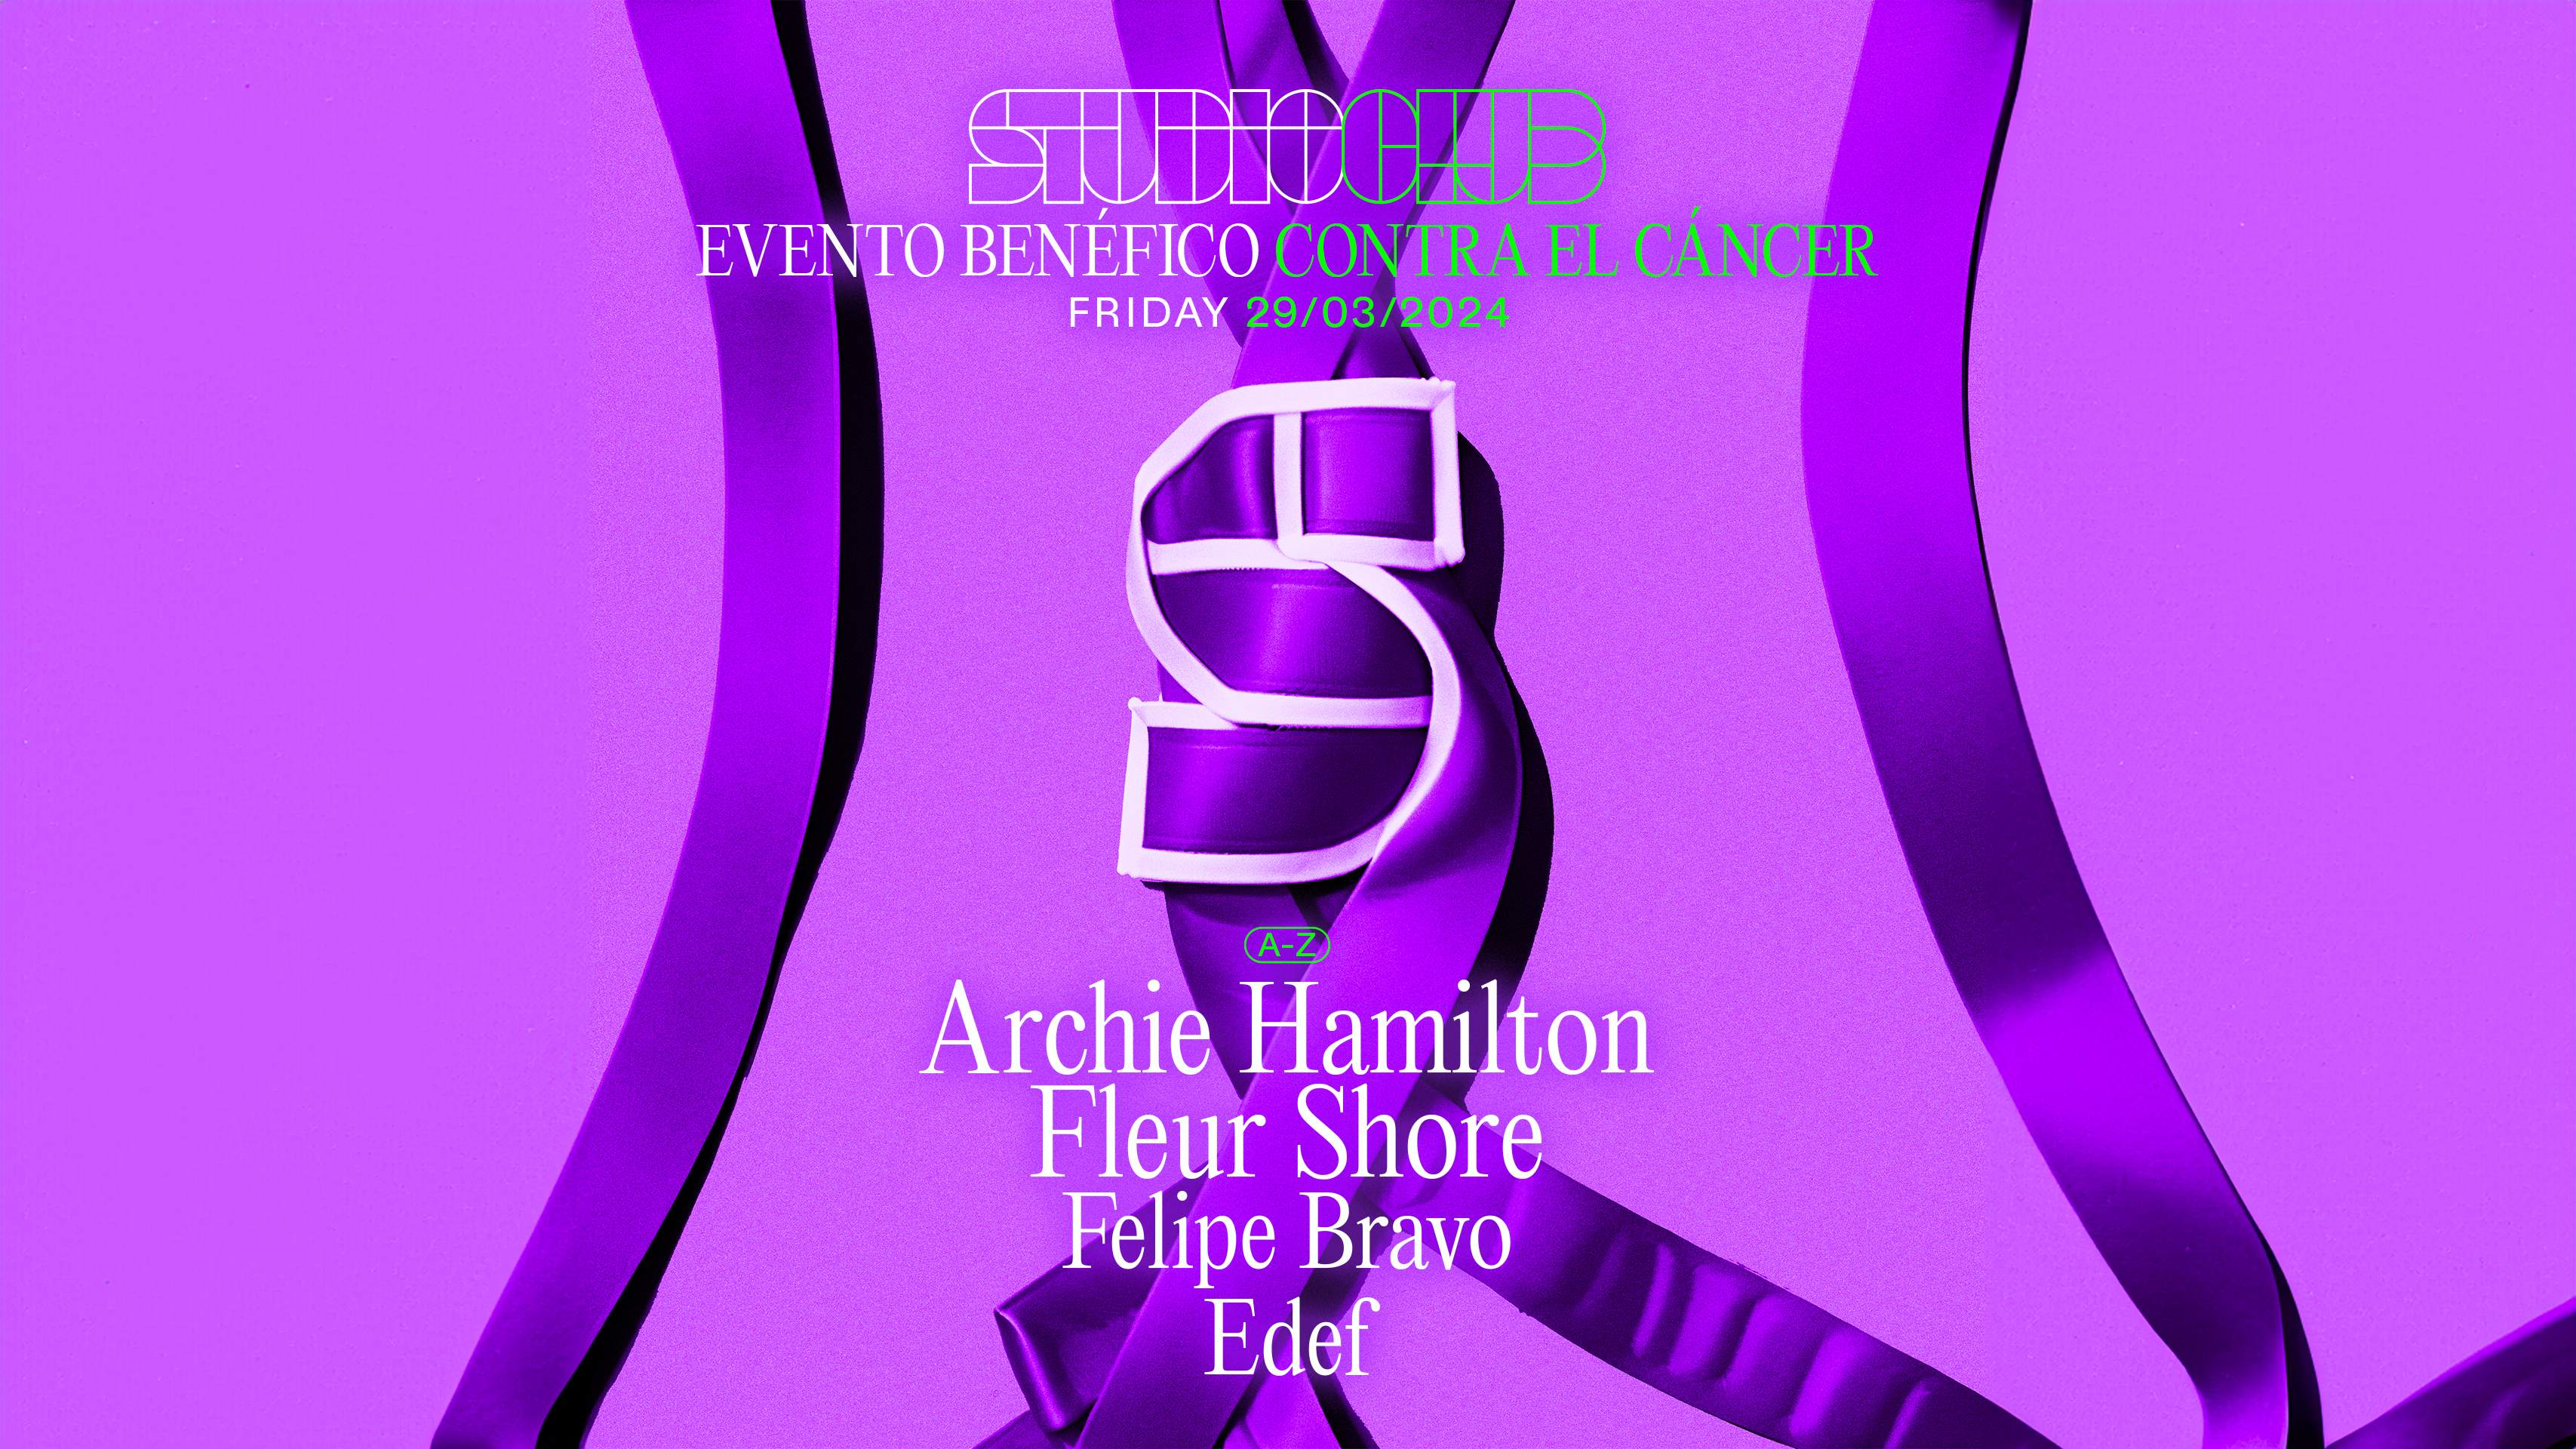 Archie Hamilton & Fleur Shore ( EVENTO BENÉFICO ) - Página frontal